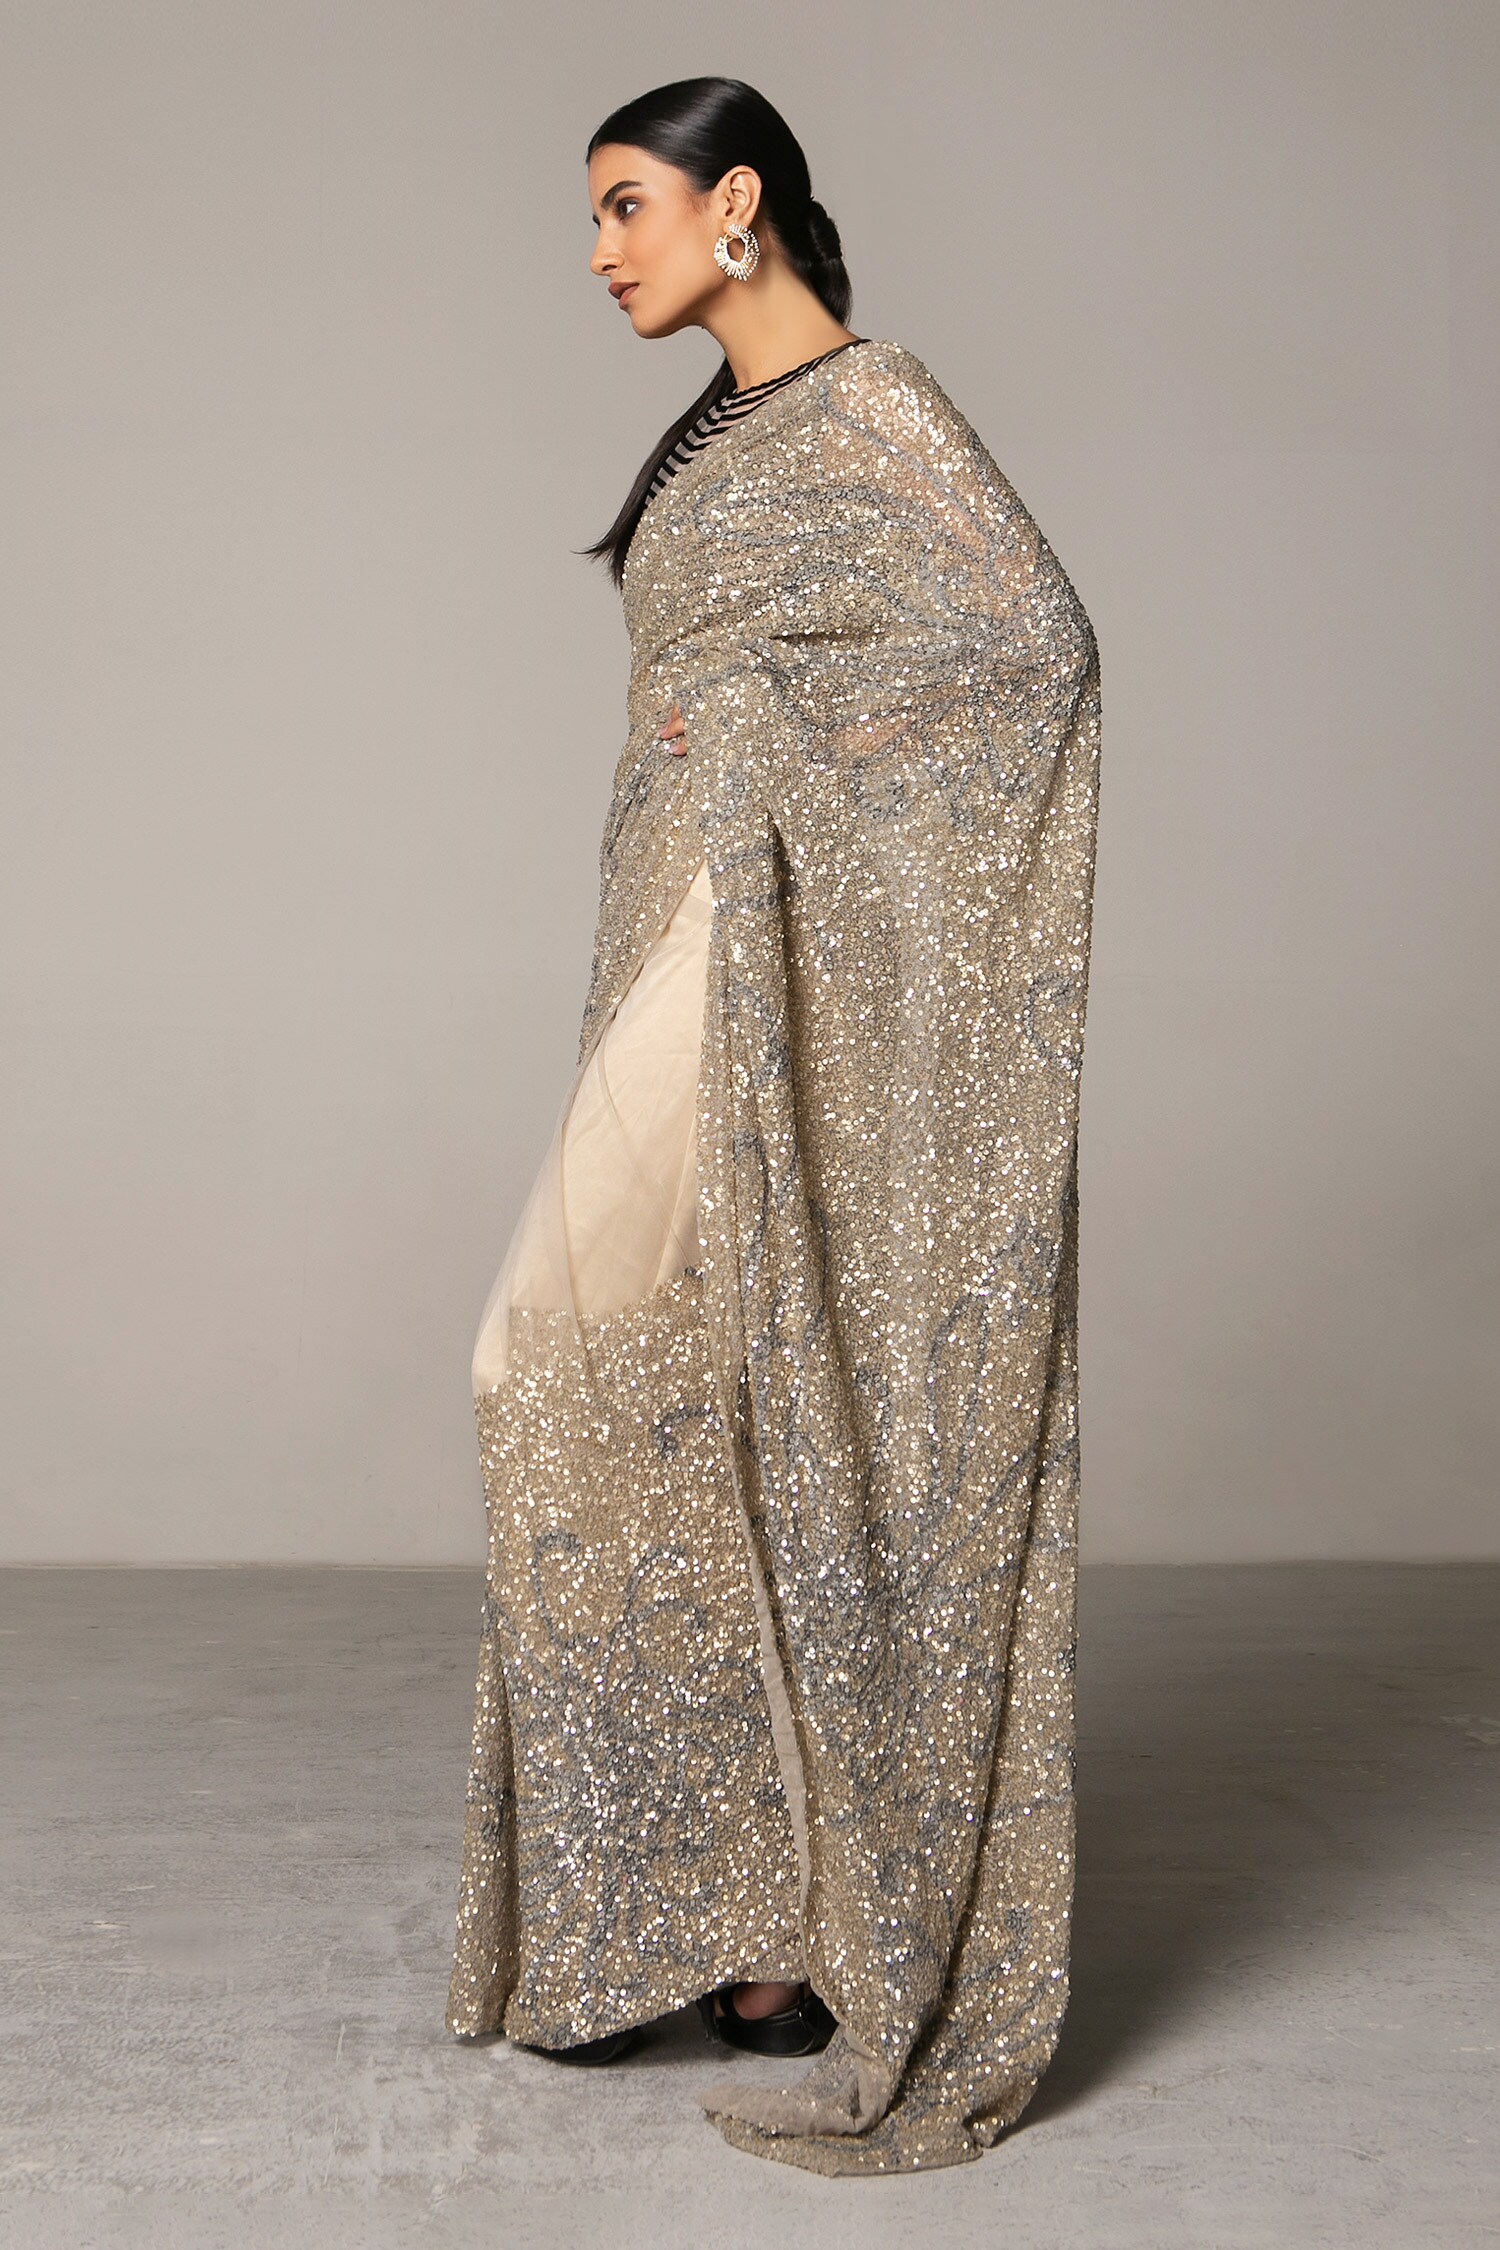 Sequin Sari/ Ombre Saree / Beige Brown Sequin Sari/ Saree With Blouse/  Cocktail Sarees/ Bollywood Saris/ Evening Wear Indian/ Designer Saree - Etsy